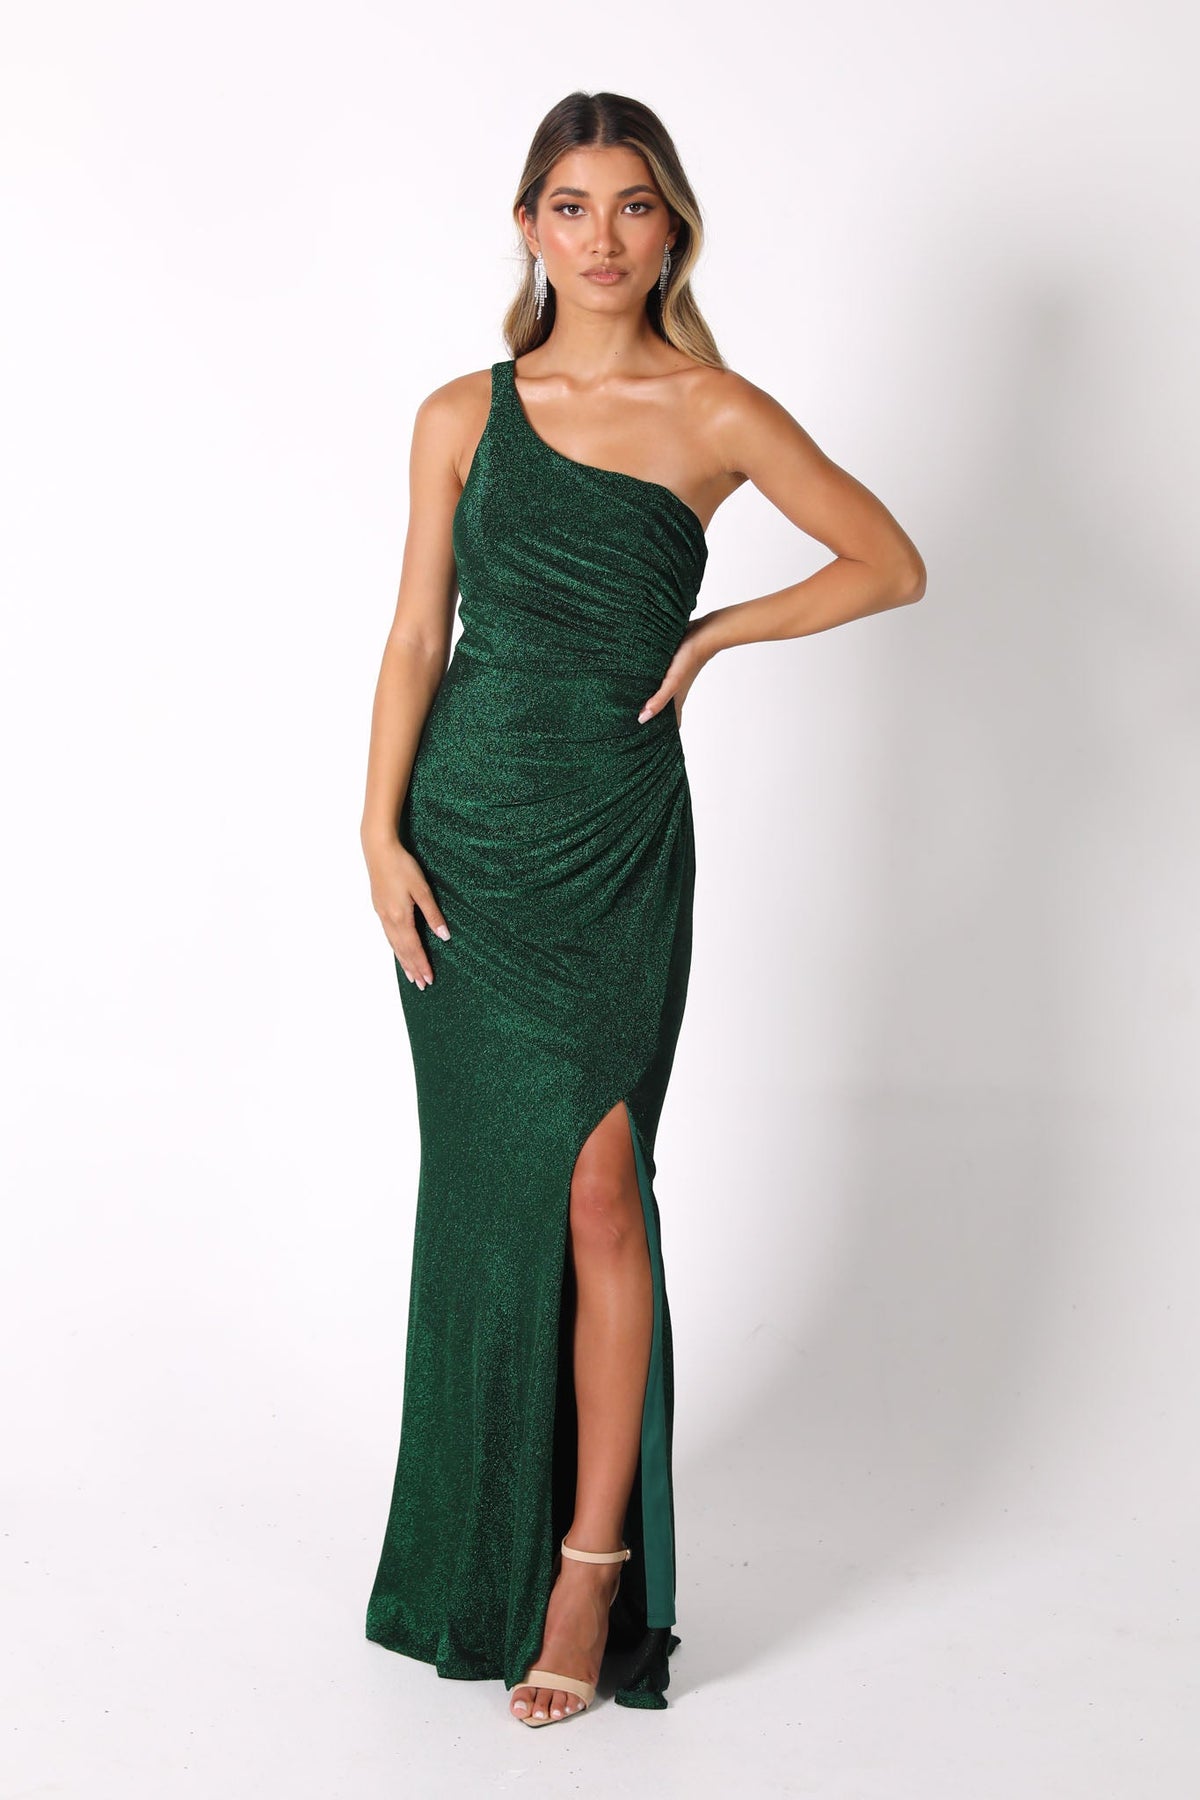 CALI One Shoulder Maxi Dress - Shimmer Green – Noodz Boutique